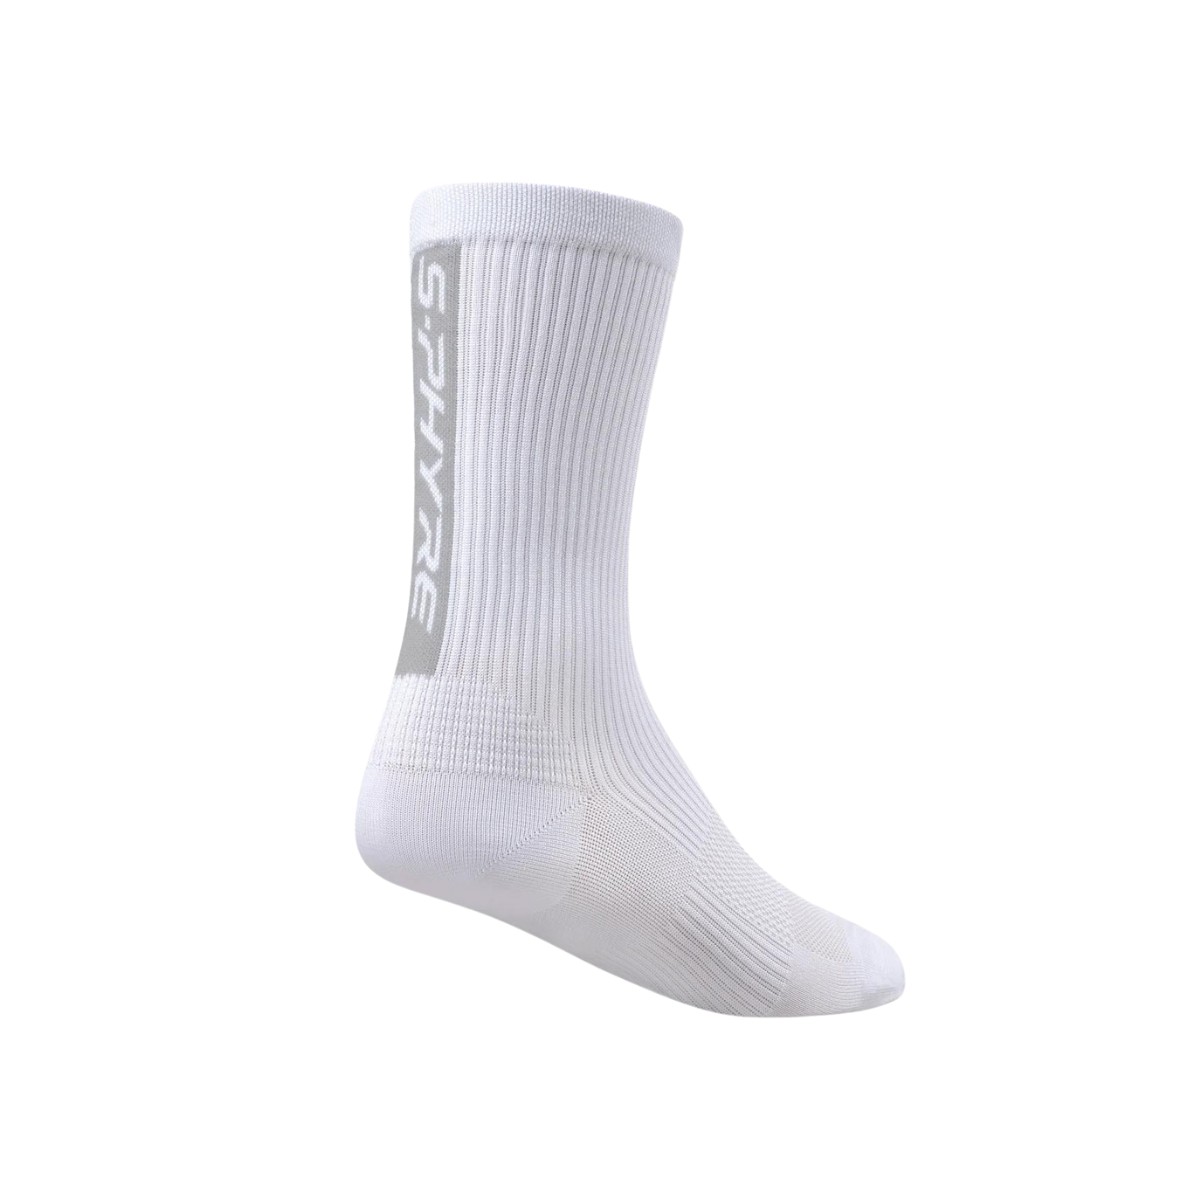 Man at günstig Kaufen-Shimano S-Phyre Flash Weiße Socken, Größe L/XL. Shimano S-Phyre Flash Weiße Socken, Größe L/XL <![CDATA[Shimano S-Phyre Flash Socken Entdecken Sie maximale Leistung mit den Shimano S-Phyre Flash Socken, die speziell für Hoch